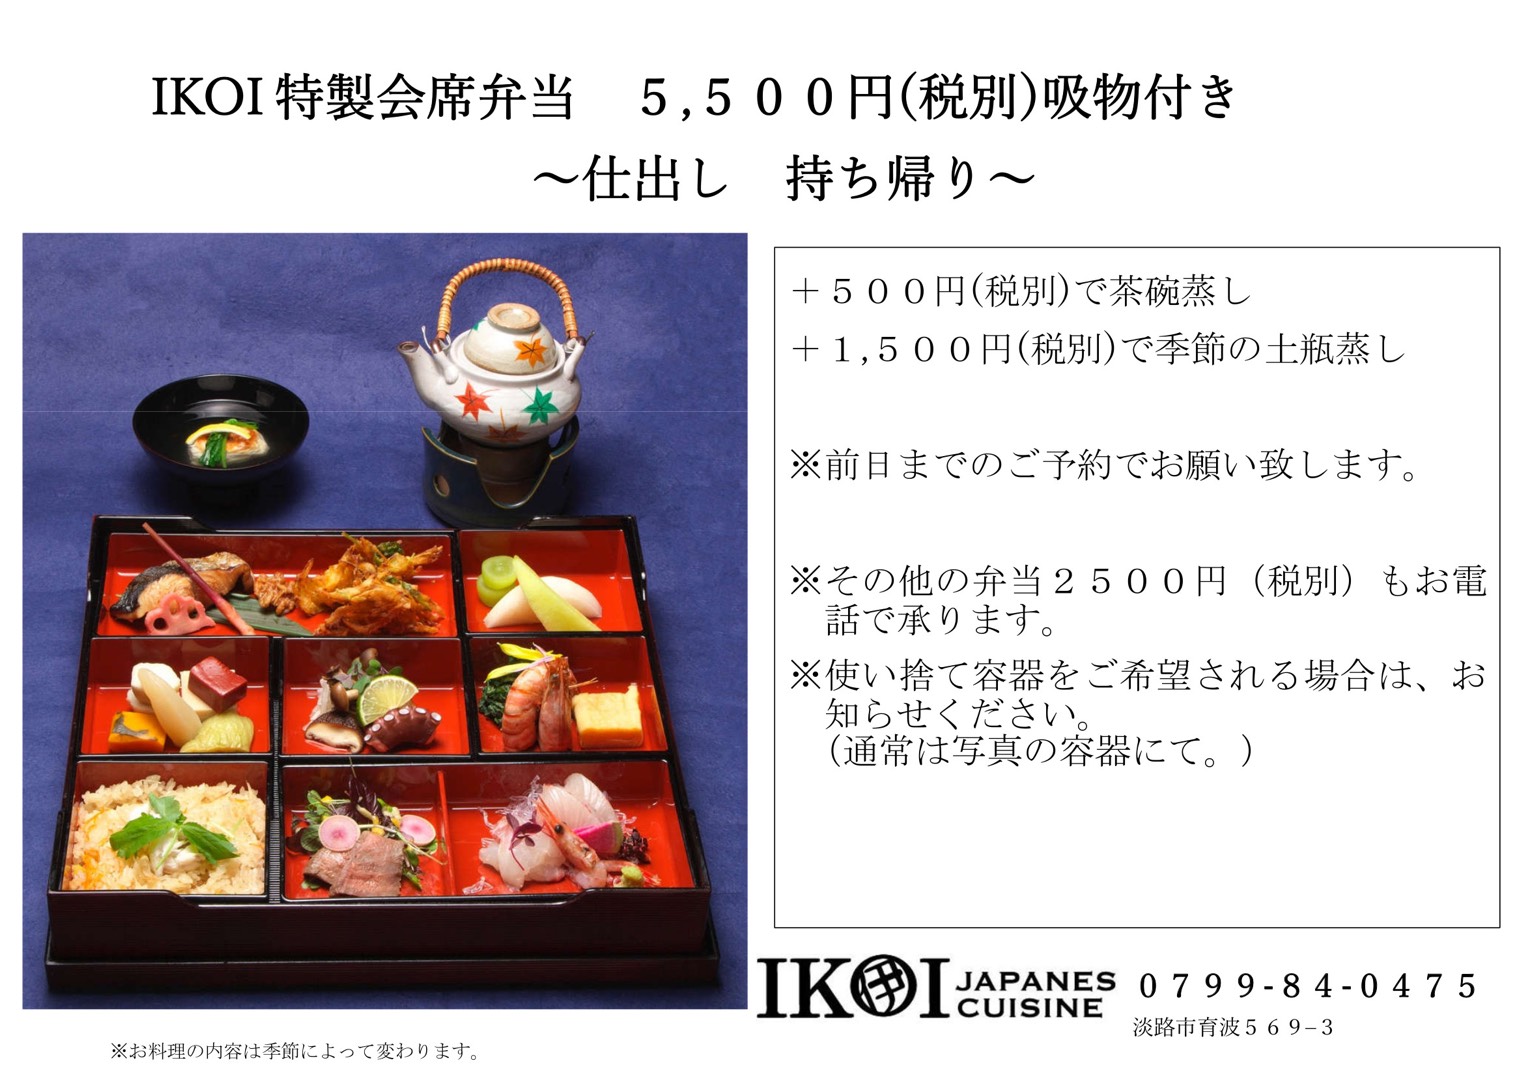 Ikoi Japnese Cuisine 淡路島のテイクアウトグルメポータルサイト お持ち帰りデリ あわじしま